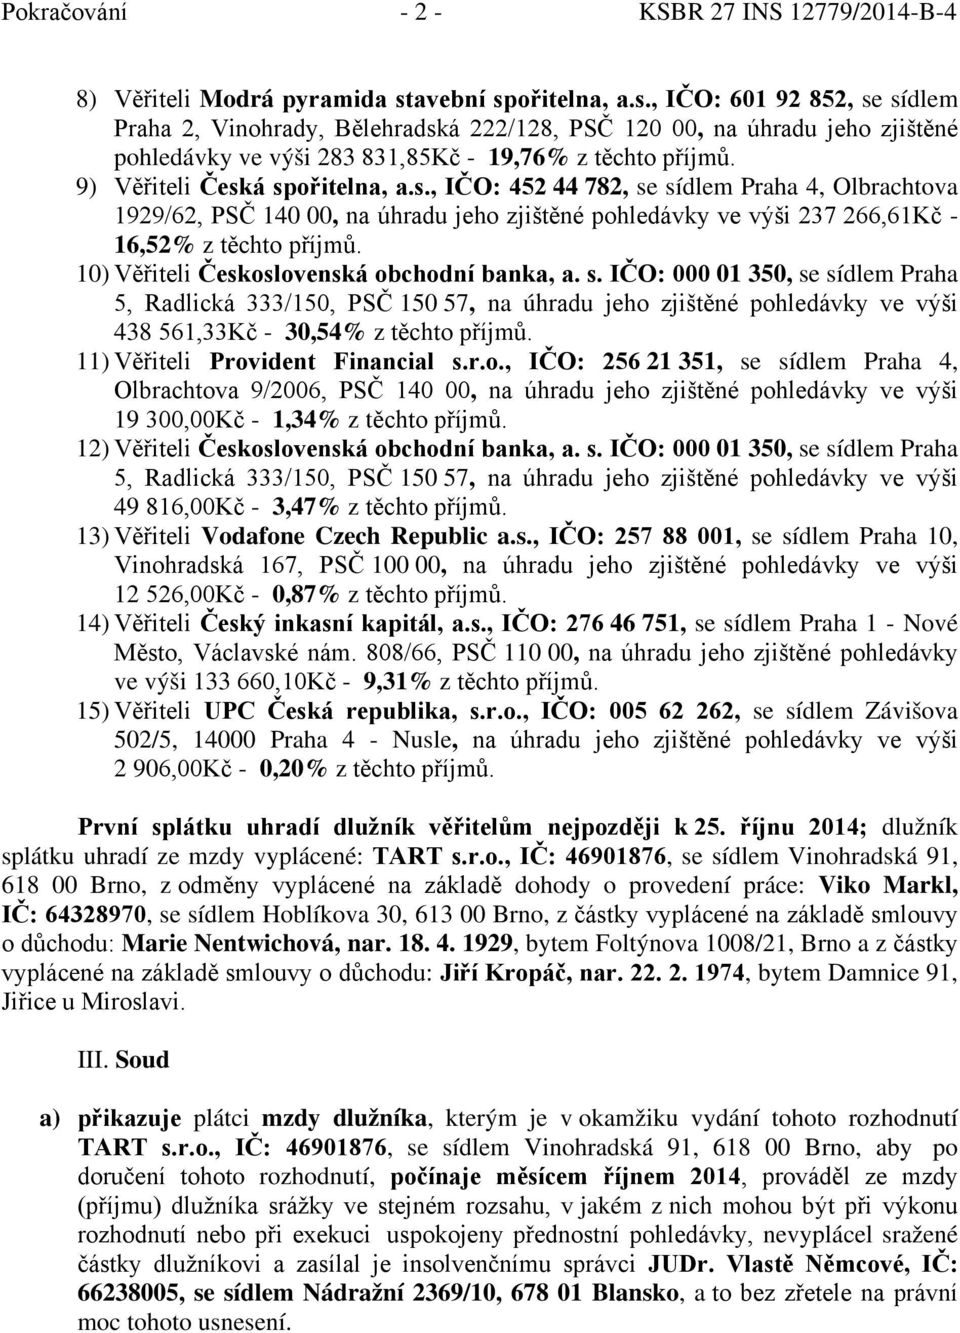 9) Věřiteli Česká spořitelna, a.s., IČO: 452 44 782, se sídlem Praha 4, Olbrachtova 1929/62, PSČ 140 00, na úhradu jeho zjištěné pohledávky ve výši 237 266,61Kč - 16,52% z těchto příjmů.